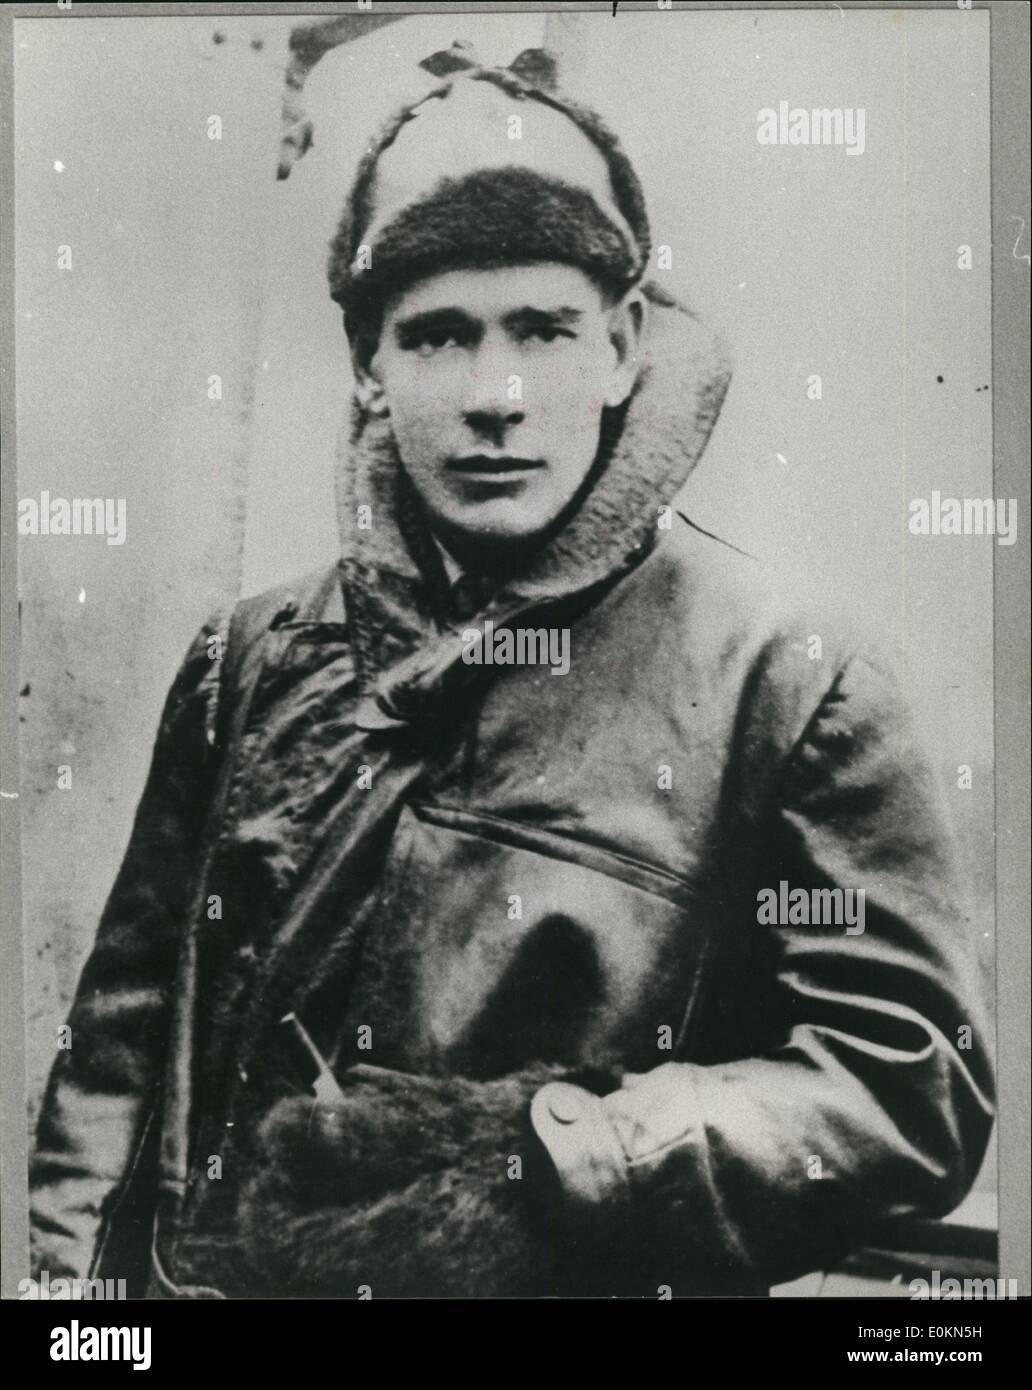 1 janvier, 1915 - Première Guerre mondiale : l'image montre le chef d'Escadron Micky Mannock du Royal Flying Corps. Banque D'Images